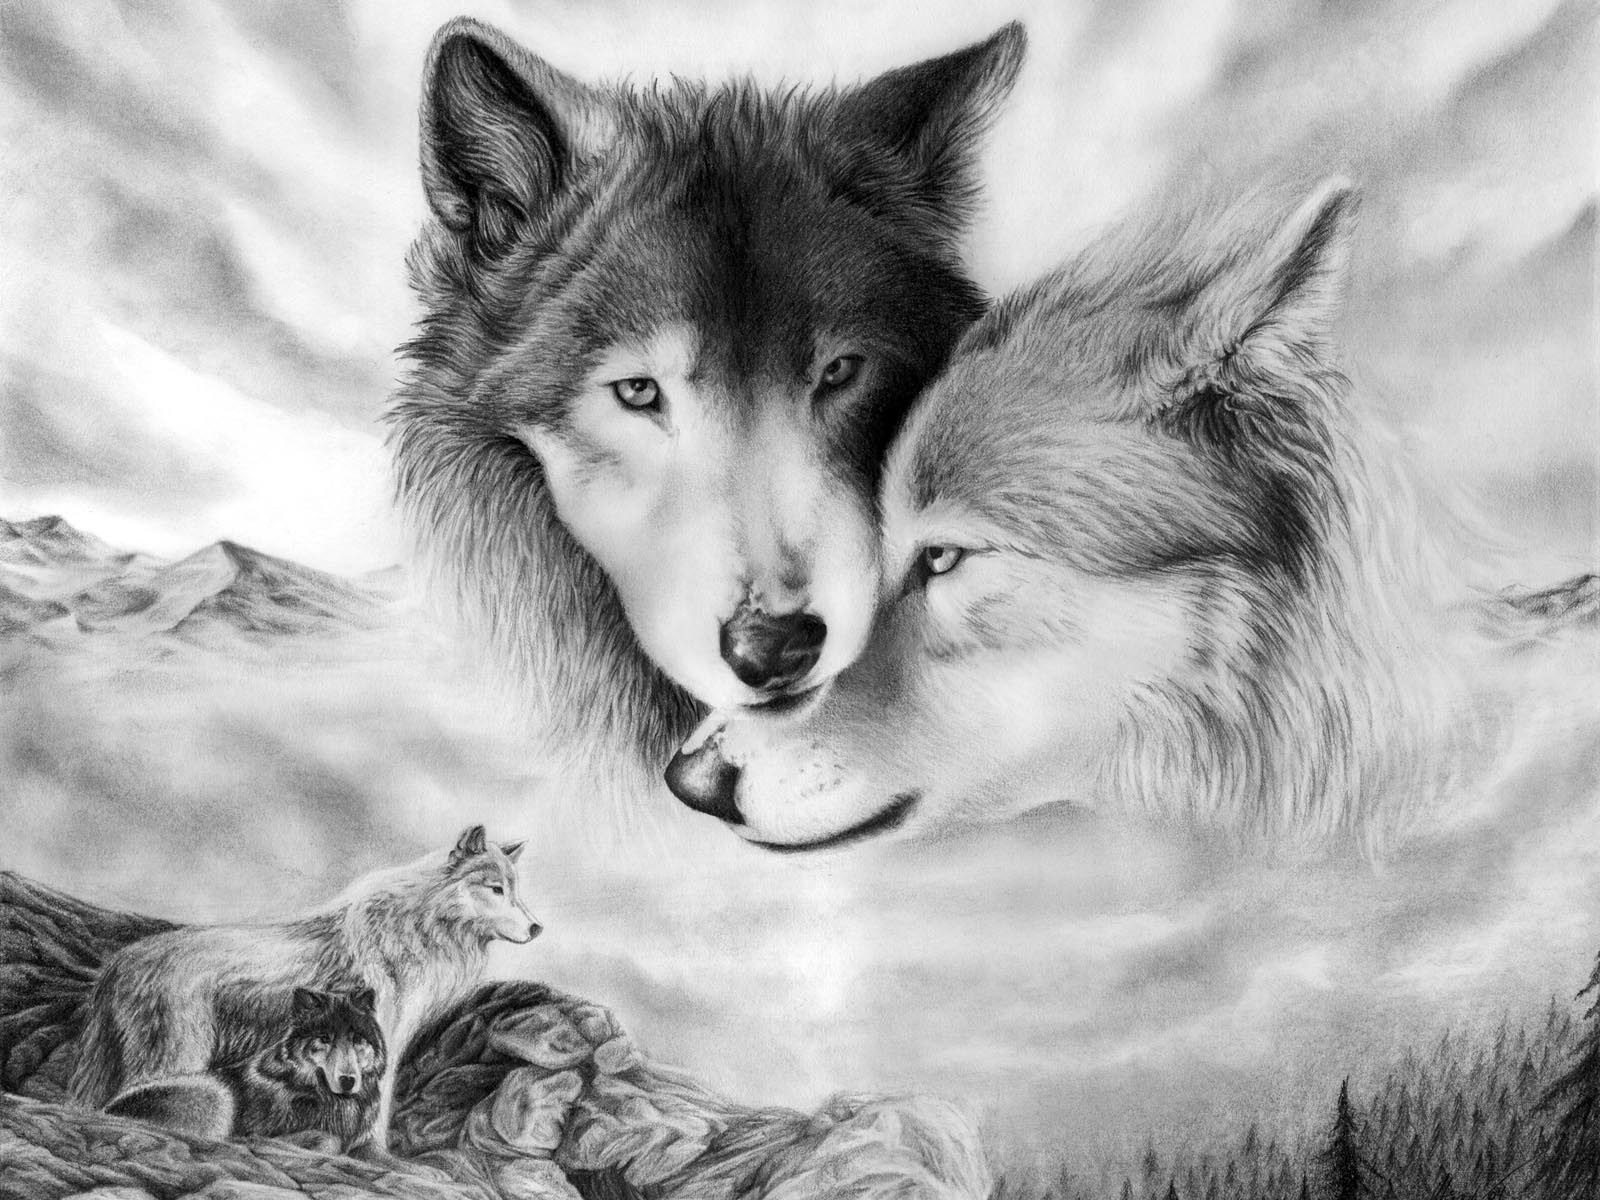 オオカミの壁紙,野生動物,狼,犬,黒と白,お絵かき